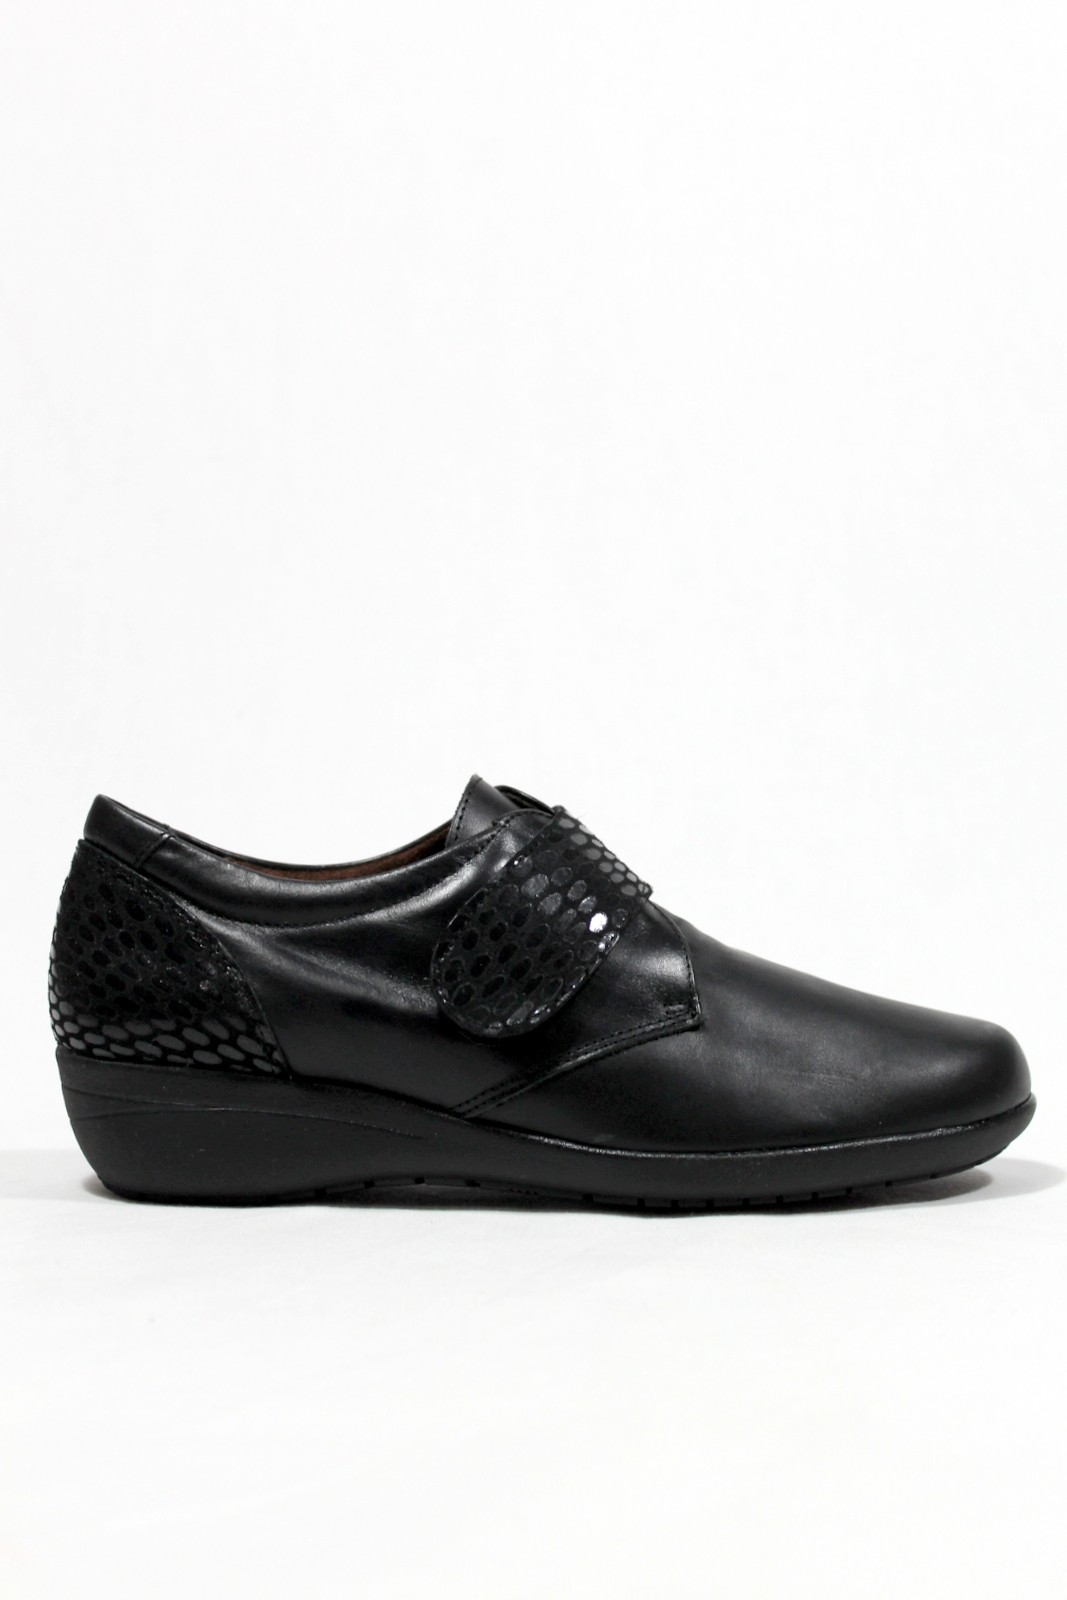 FAP - Zapato pies delicados. Liso con de Negro. FAP| Calzados